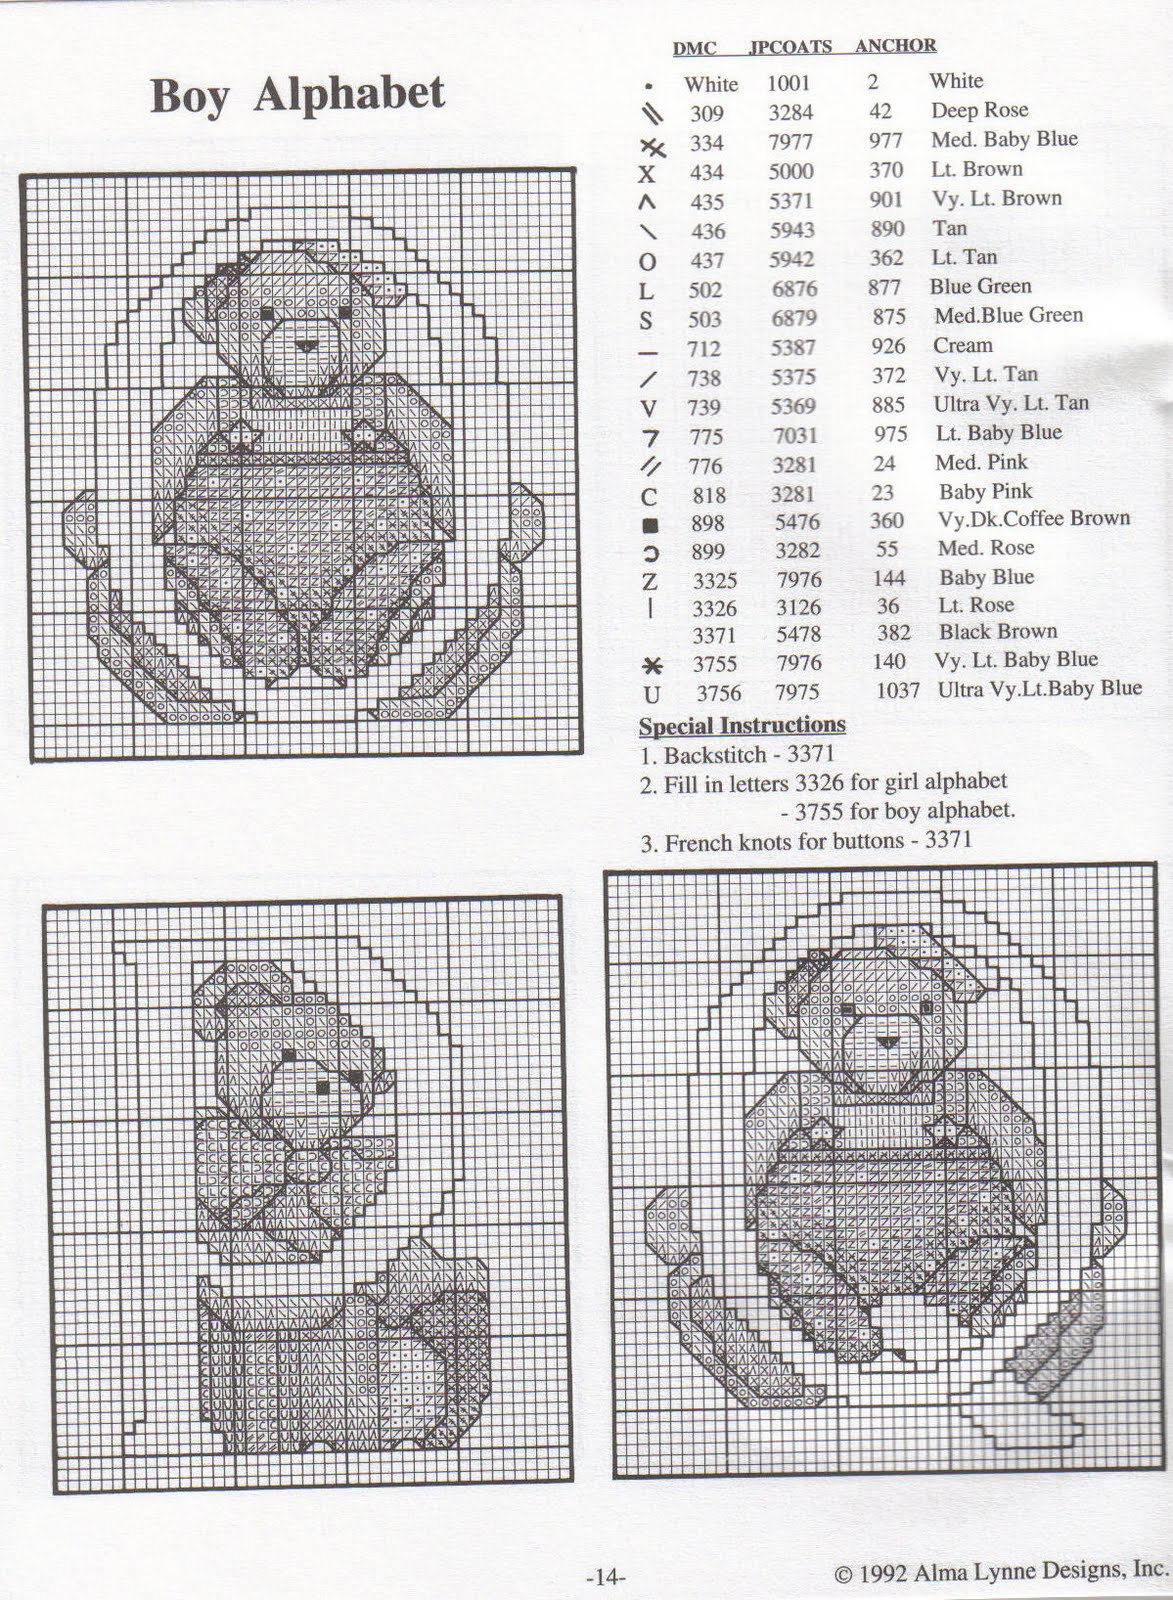 Cross stitch alphabet with sweet teddy bears (13)